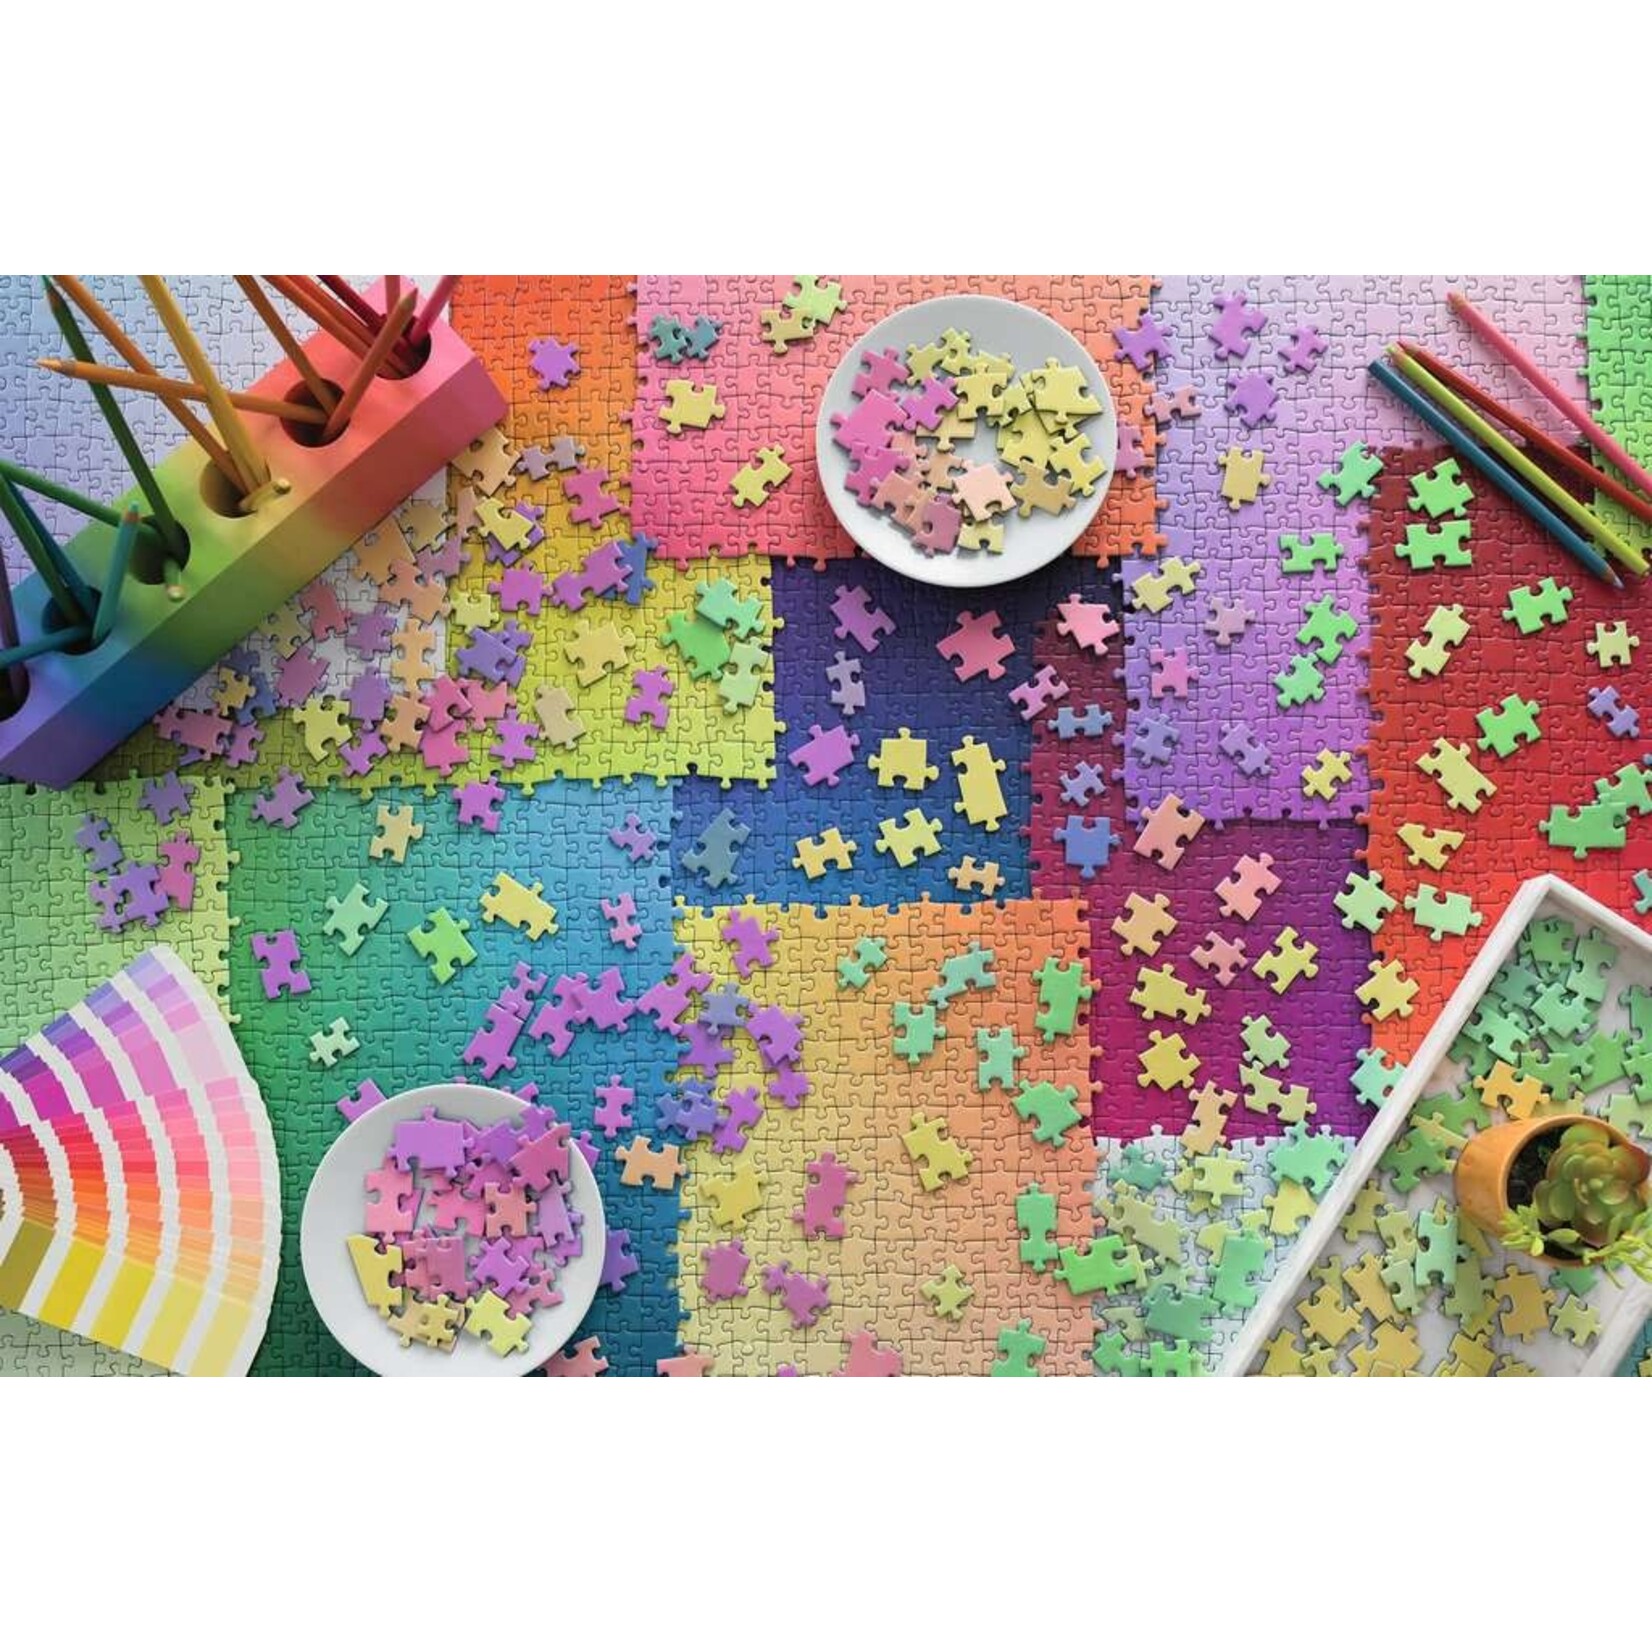 Karen Puzzles on Puzzles 3000 Piece Puzzle